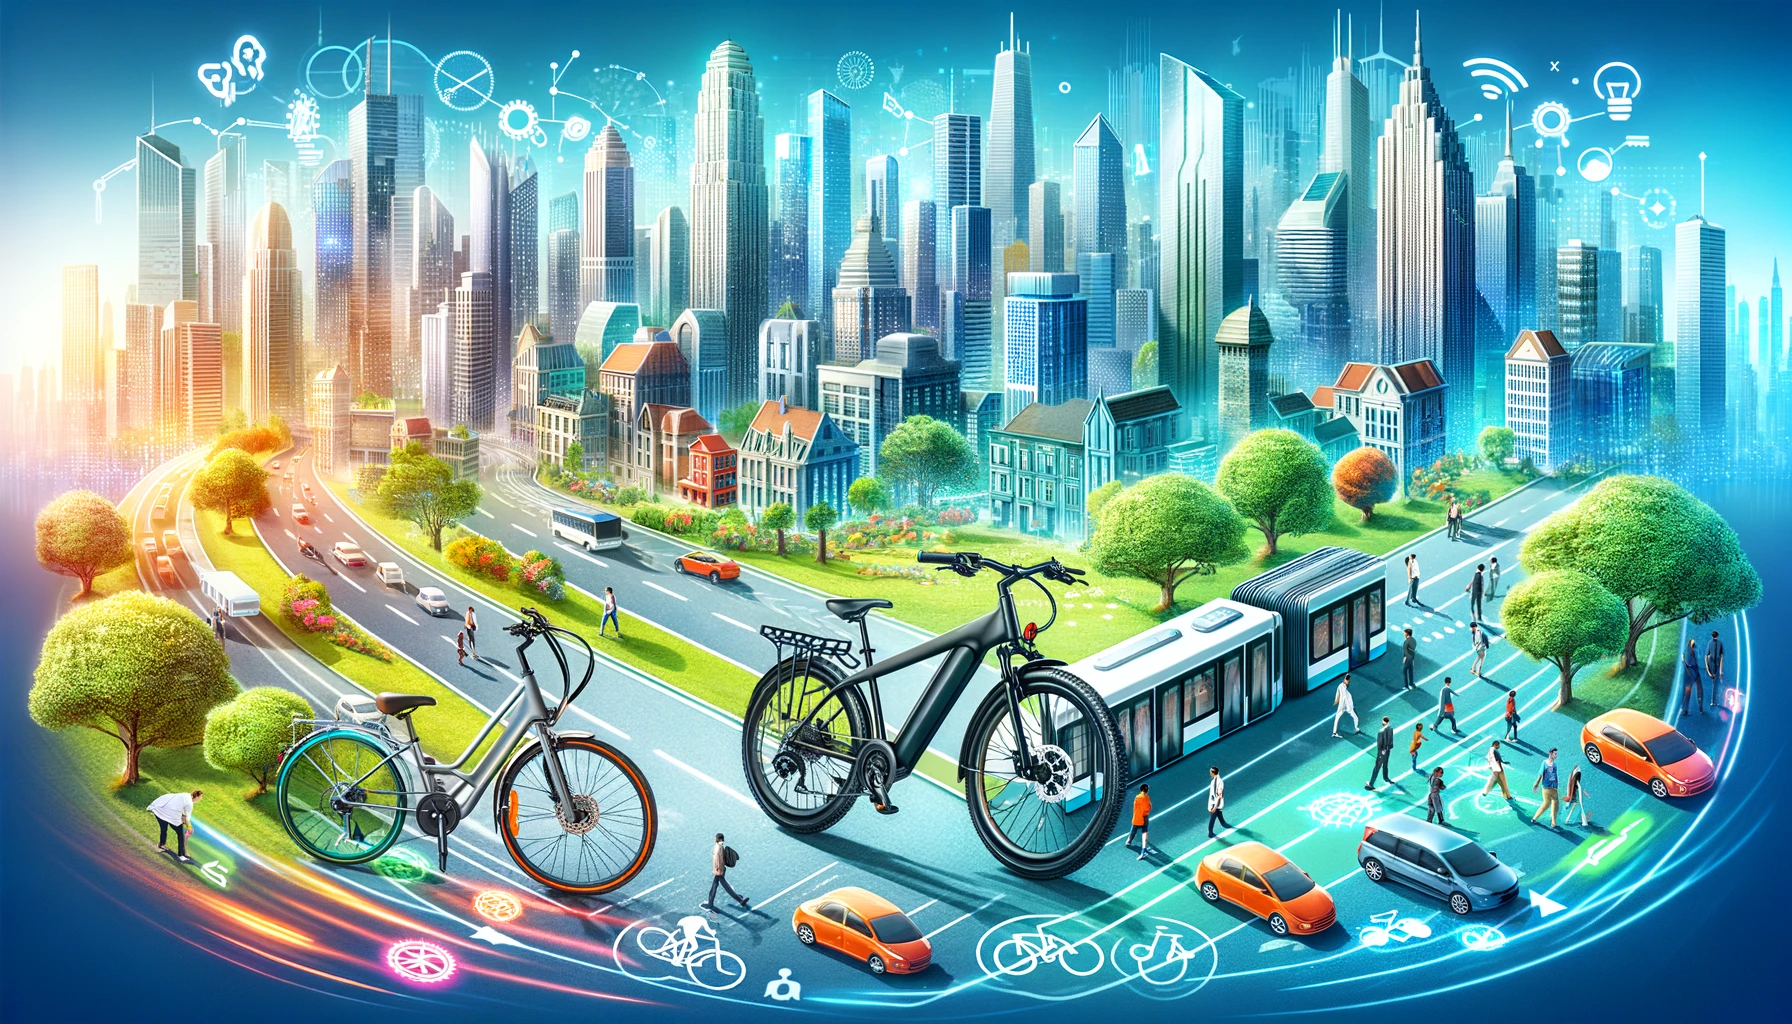 전기 자전거 대 일반 자전거: 도시 생활을 위한 최적의 이동 수단 선택 가이드